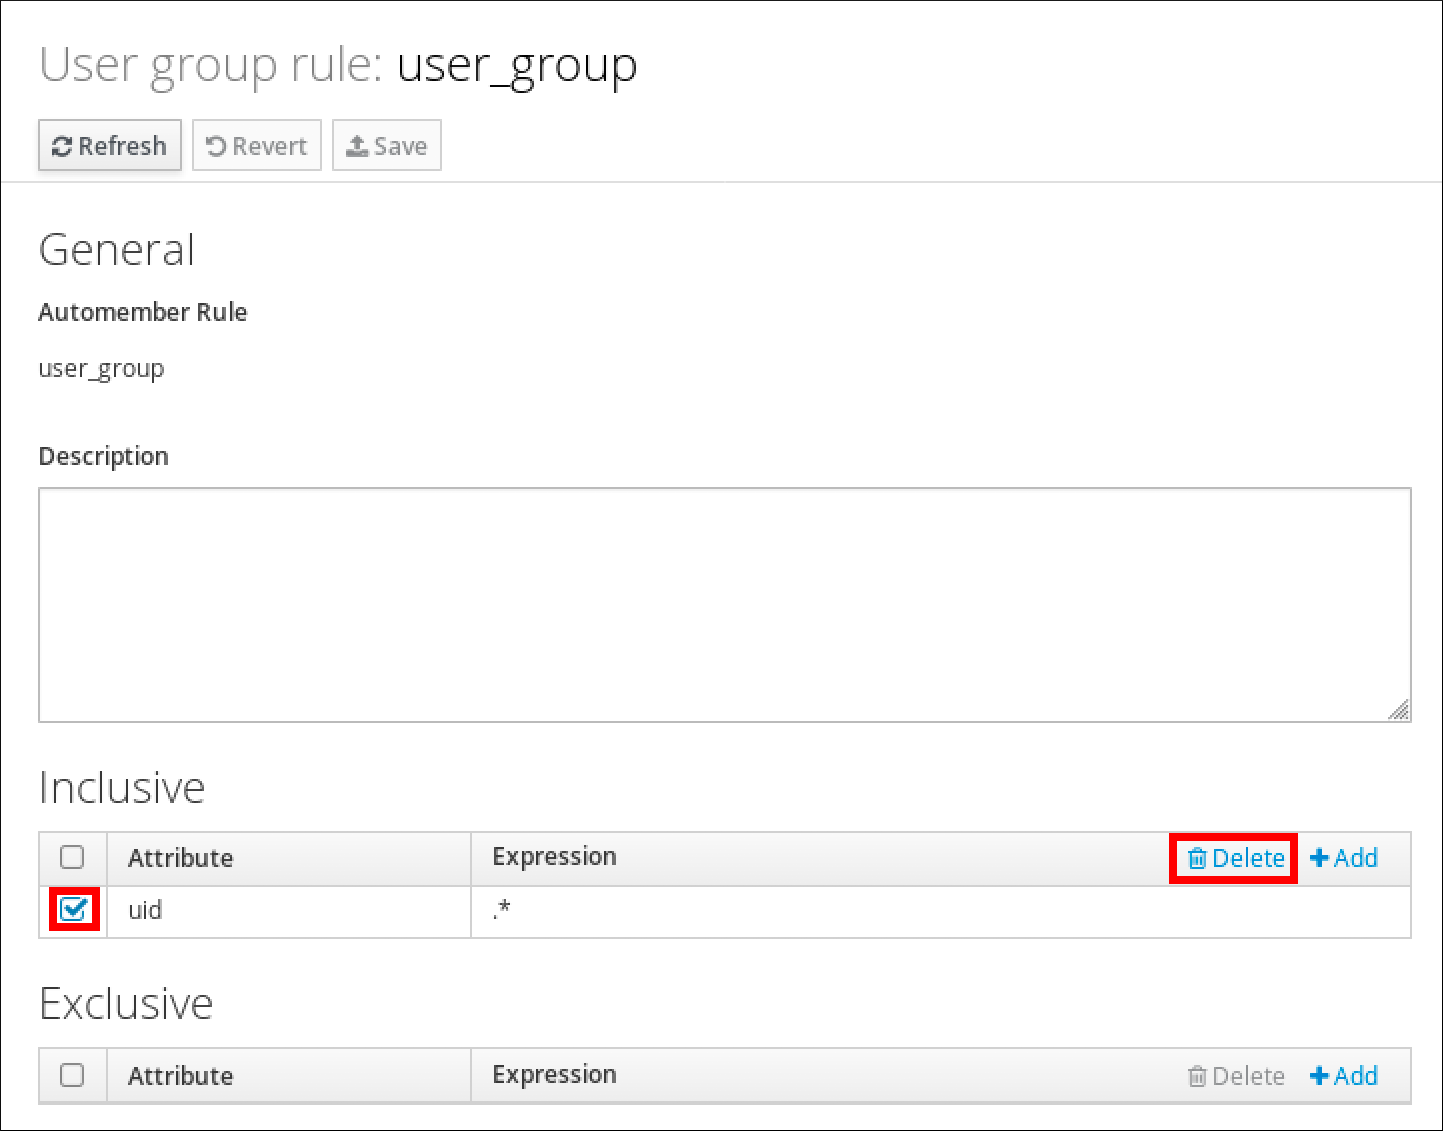 User group rule ページで user_group の情報が表示されているスクリーンショット。Inclusive セクションのチェックボックにはチェックが入っており、Inclusive セクションの Delete ボタンがハイライトされています。